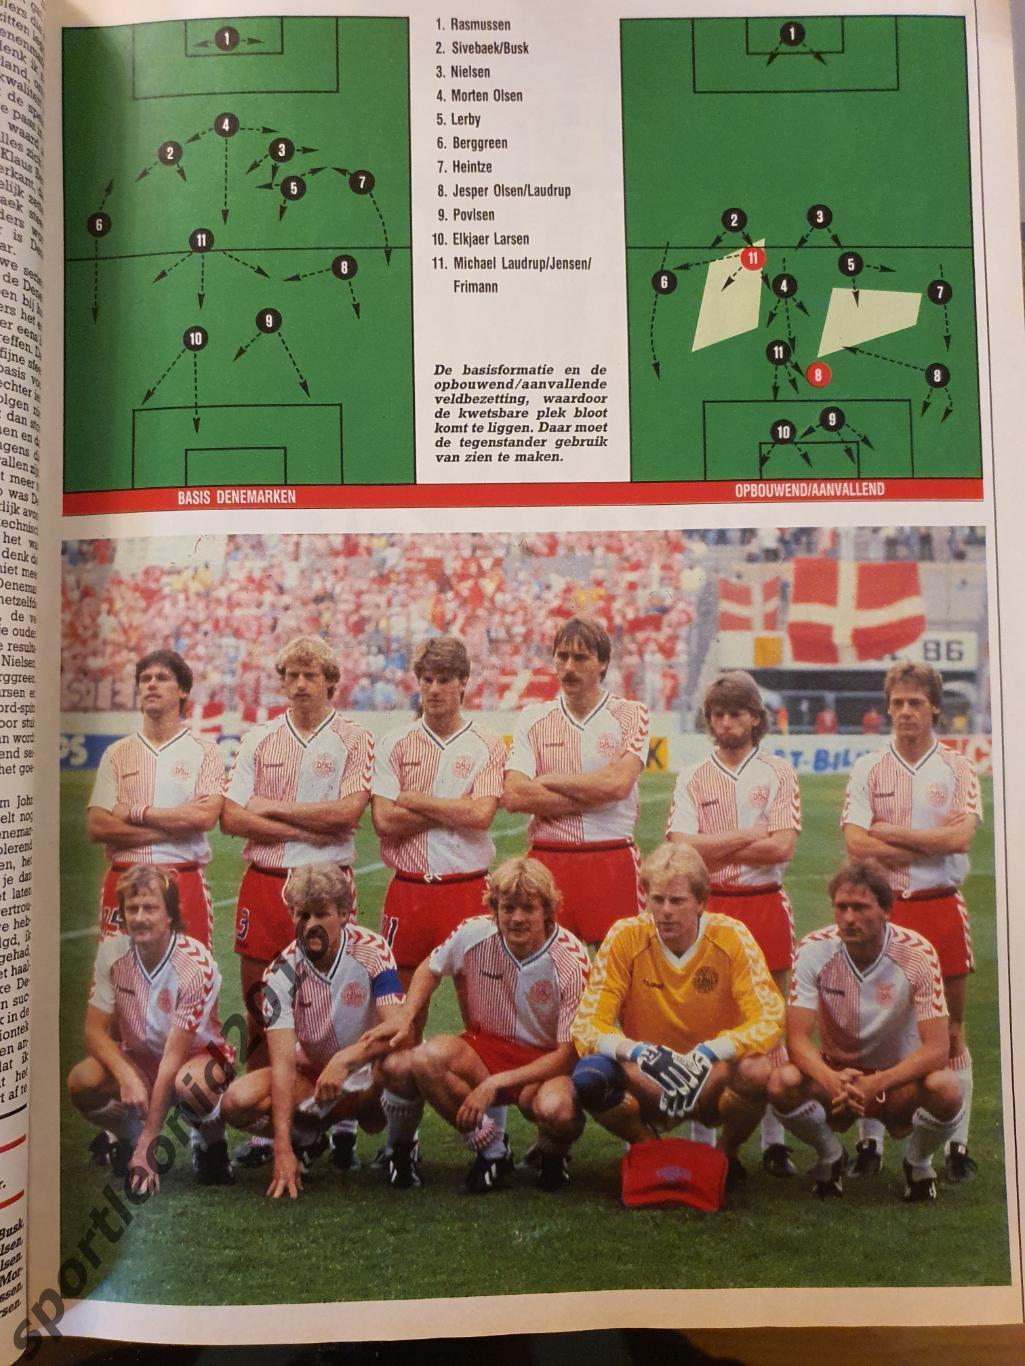 Voetbal International 1988+87.10 топ выпусков.В том числе И ВСЕ к ЧE-88.8